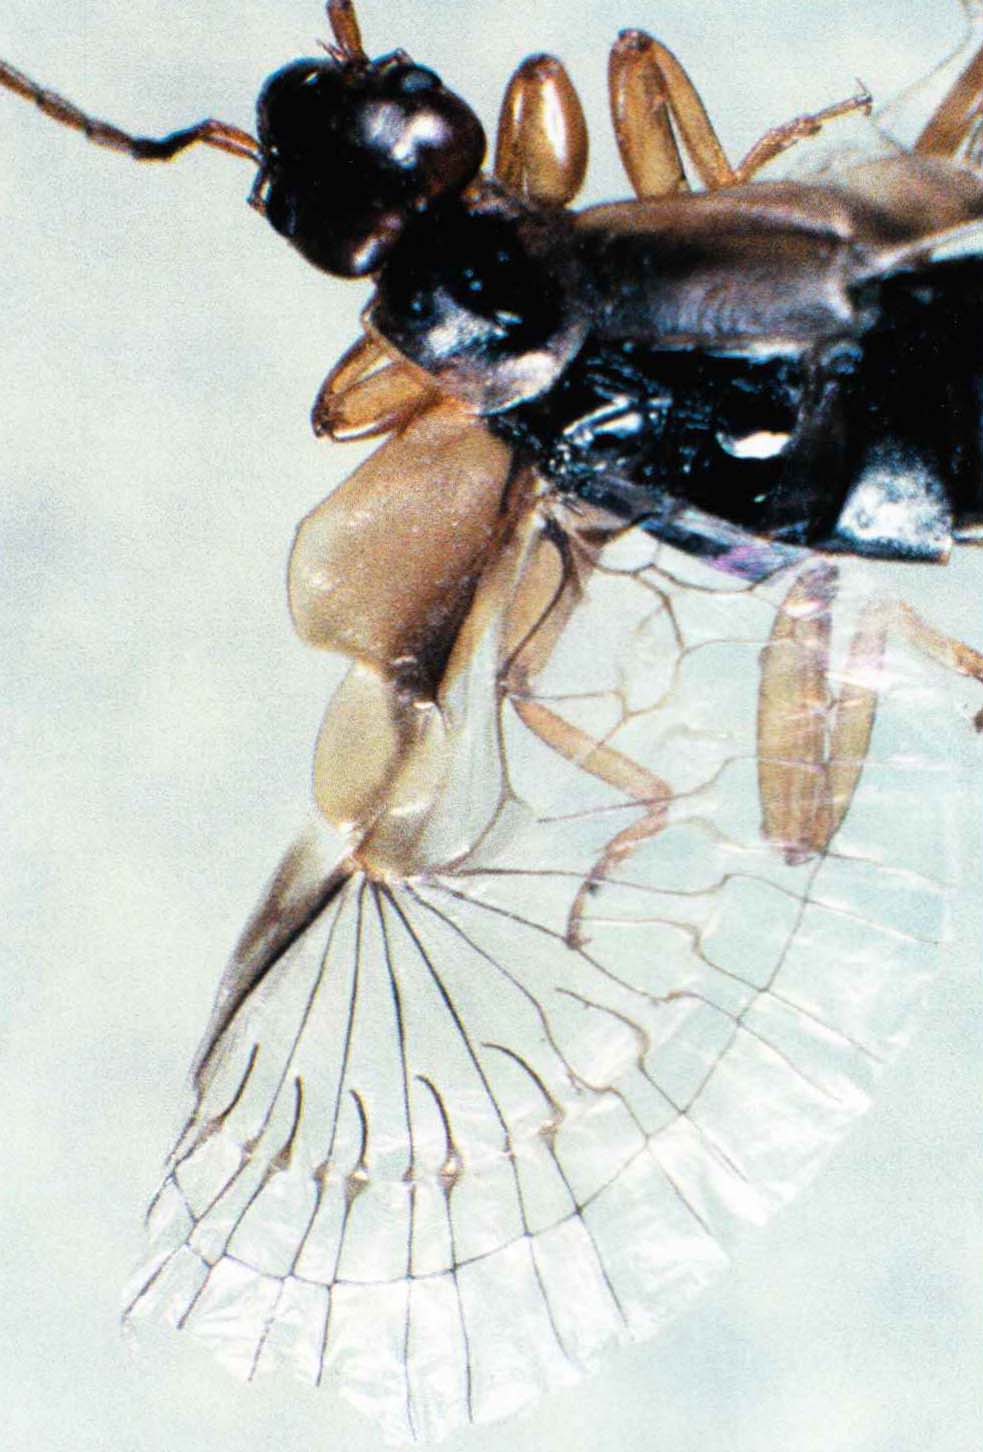 Очень широкие крылья уховертки имеют веерообразную форму. Чтобы спрятать их под короткими надкрыльями, насекомое складывает их втрое - один раз вдоль и два раза поперек.